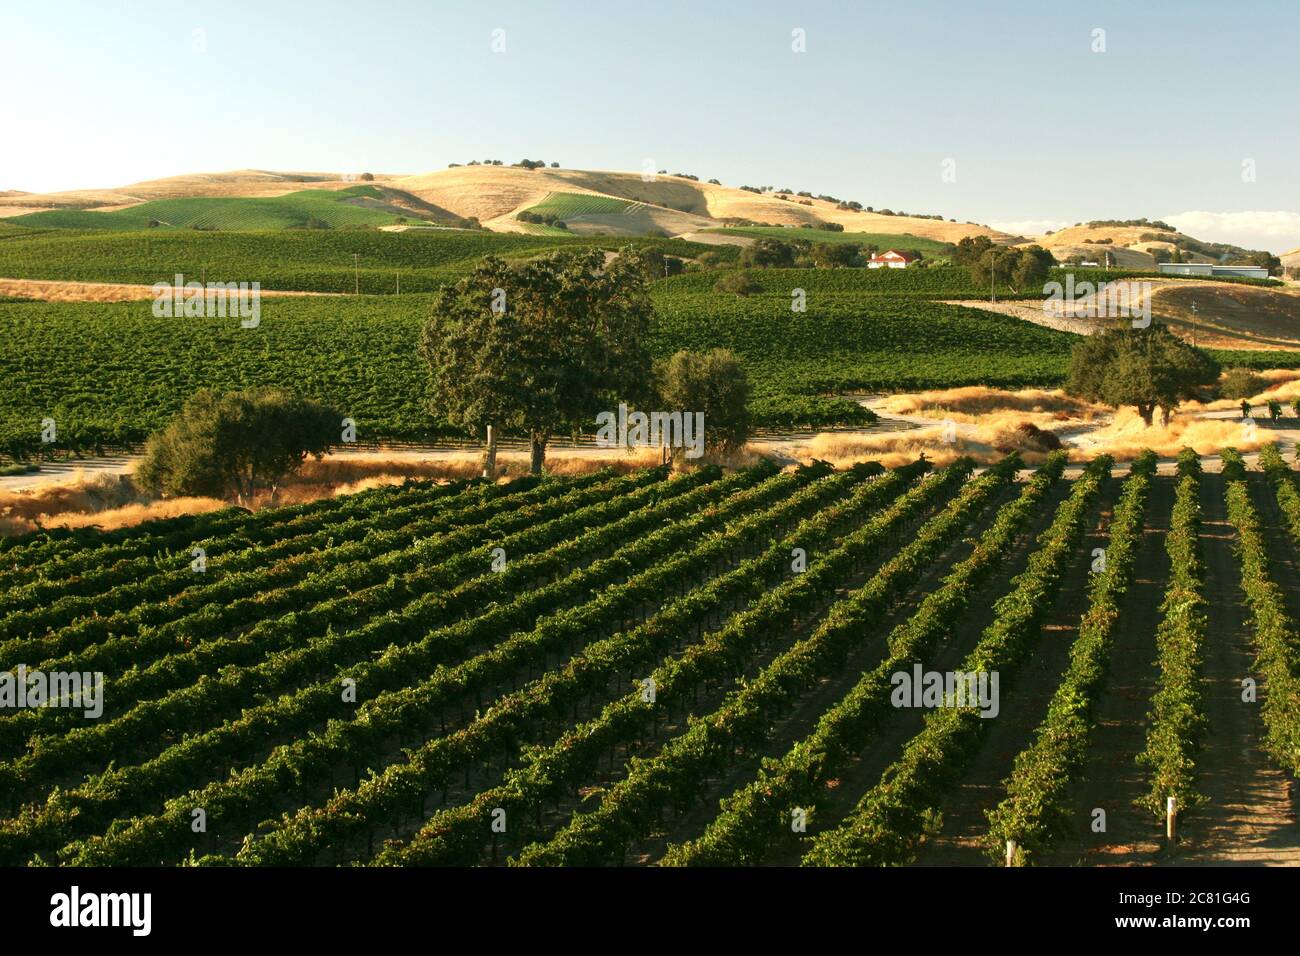 Küsteneichen, die in den Weintraubenreihen in einem Weinberg von Paso Robles stehen Stockfoto